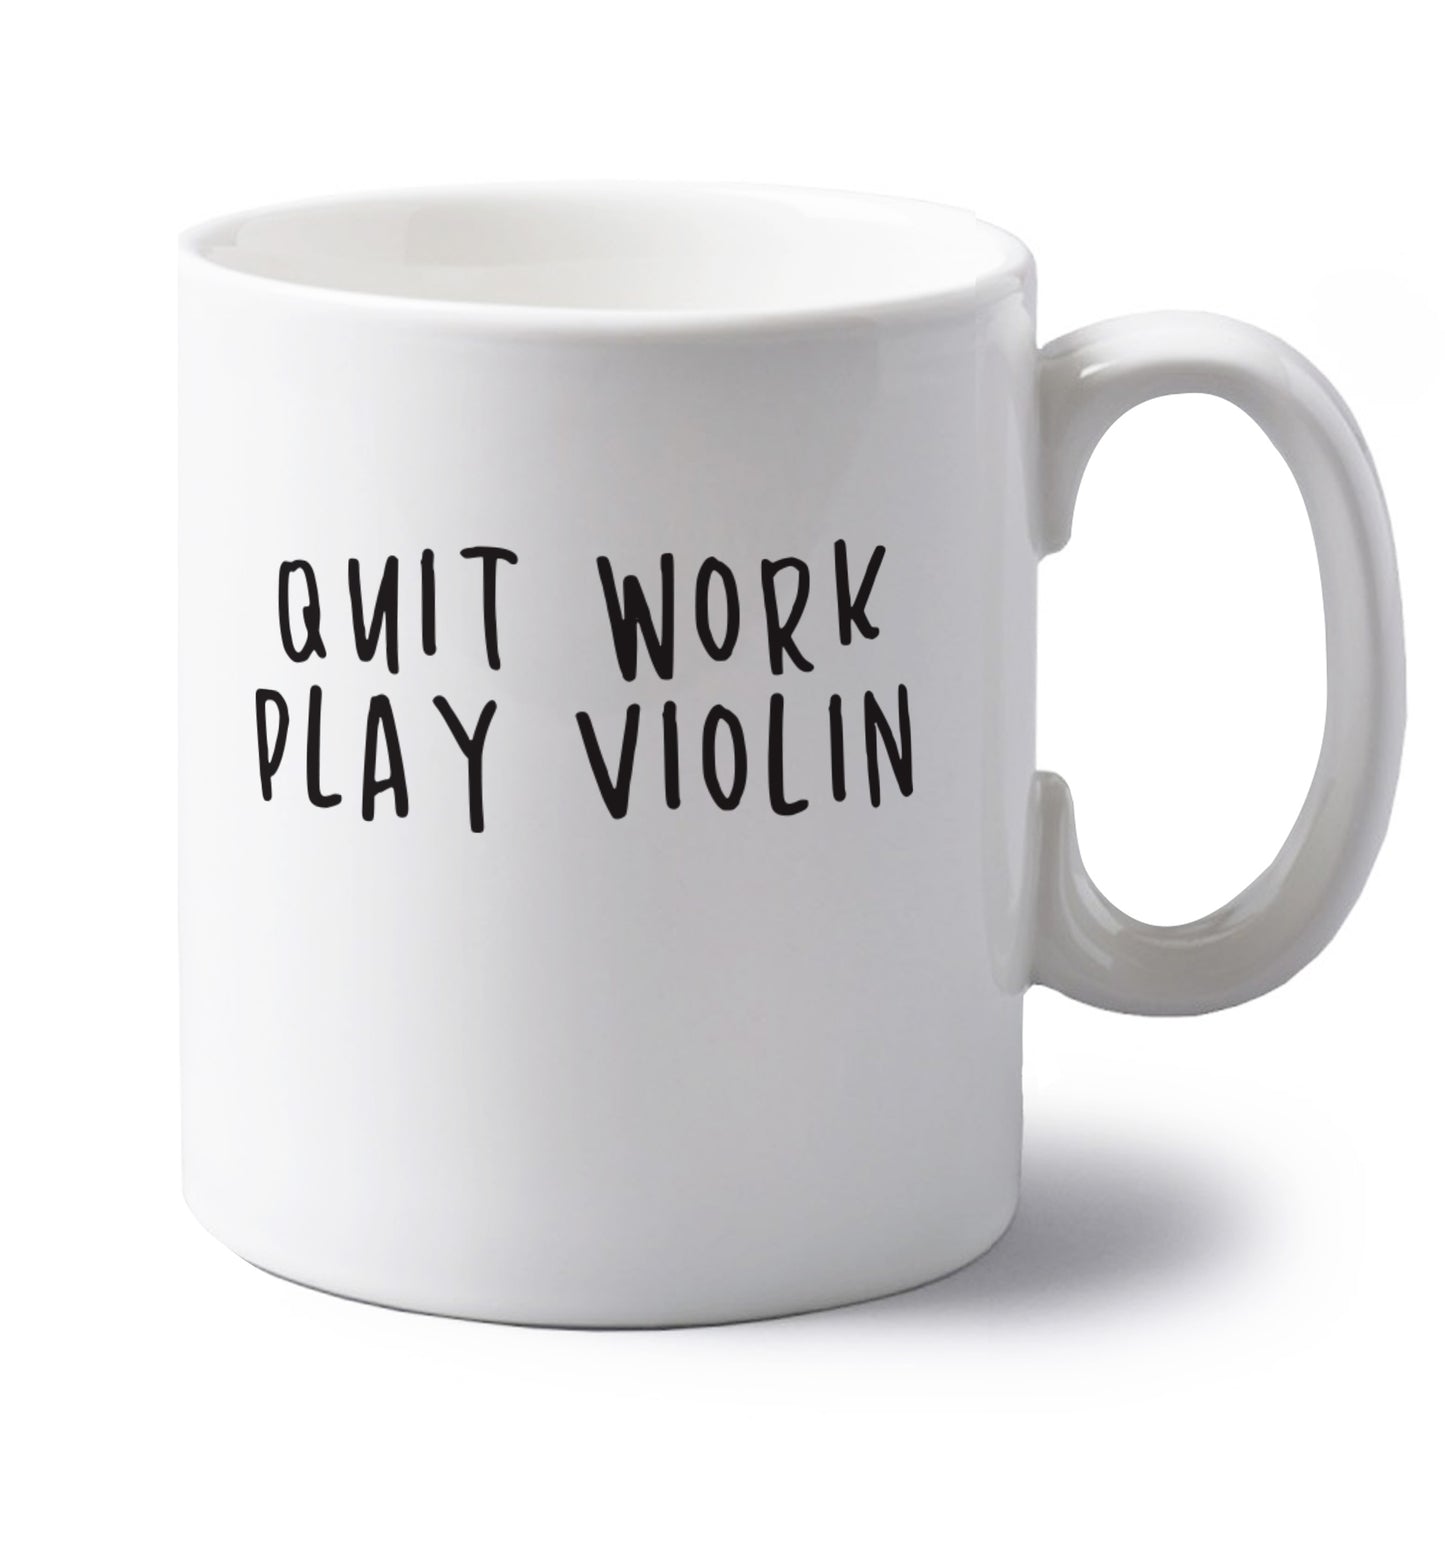 Quit work play violin left handed white ceramic mug 